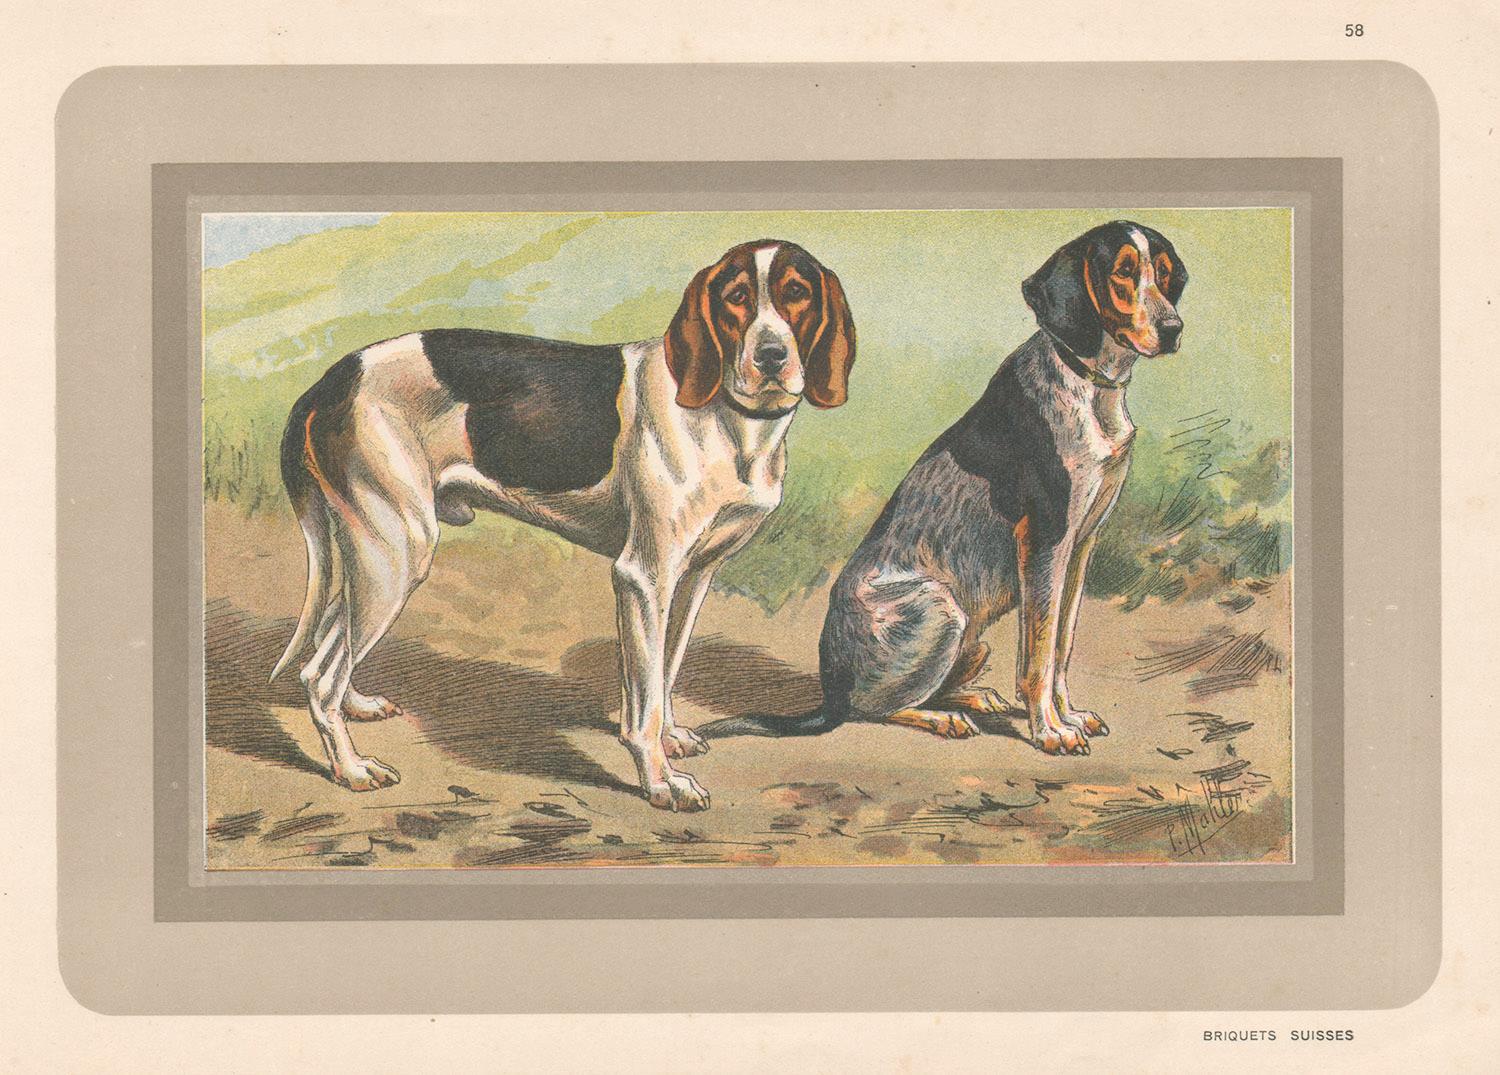 Briquets Suisses, Franzsischer Hund, Chromolithographie eines Hundes, 1930er Jahre